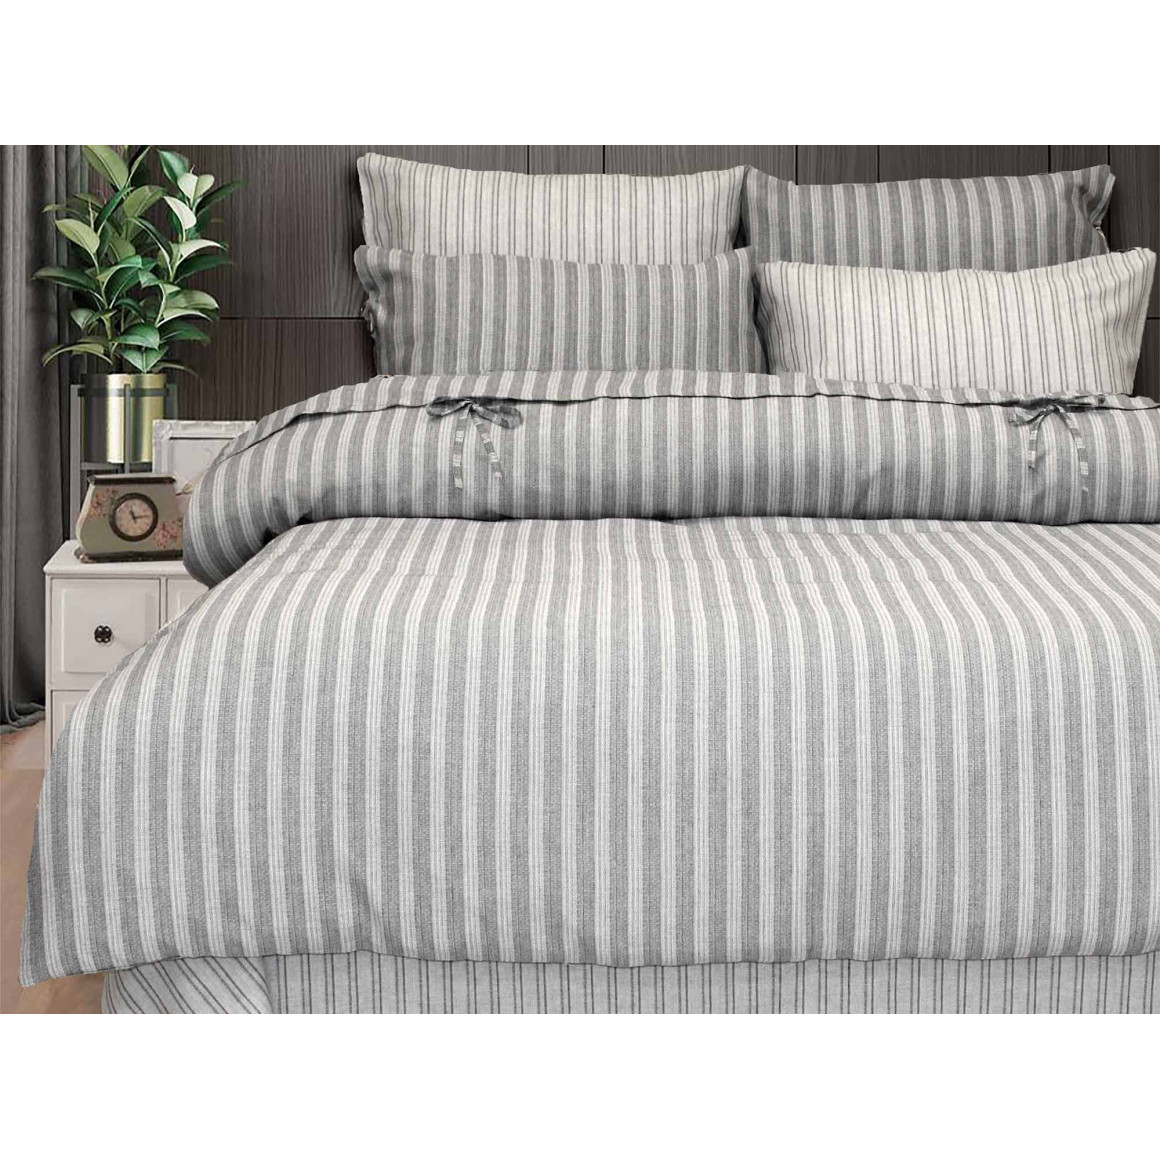 Bed linen RESTFUL AR 1X HARBER GREY 